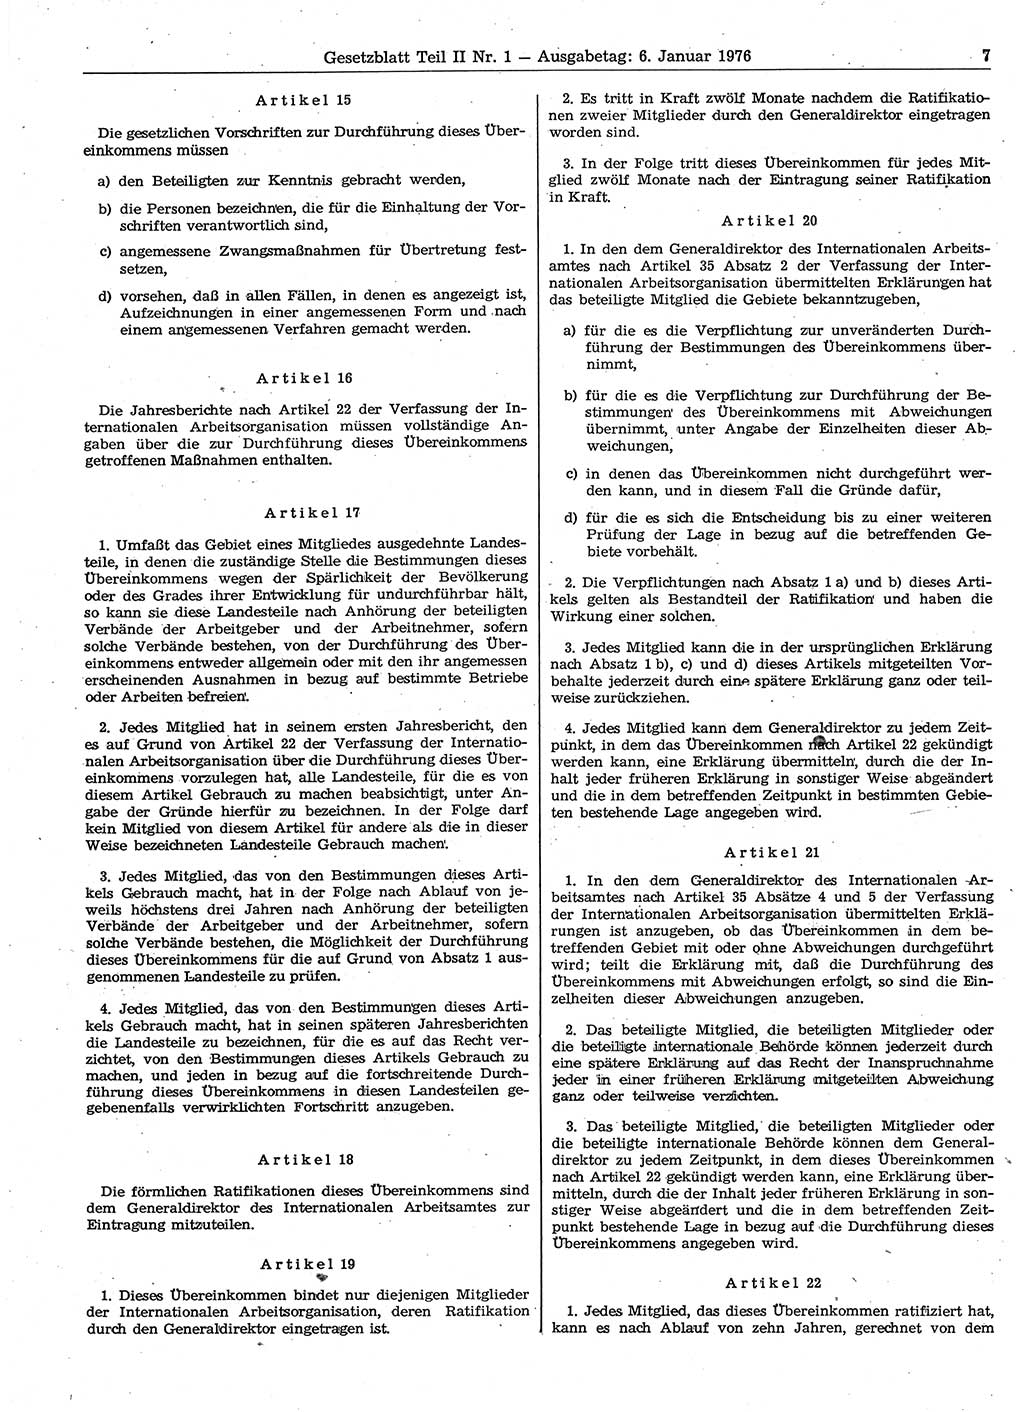 Gesetzblatt (GBl.) der Deutschen Demokratischen Republik (DDR) Teil ⅠⅠ 1976, Seite 7 (GBl. DDR ⅠⅠ 1976, S. 7)